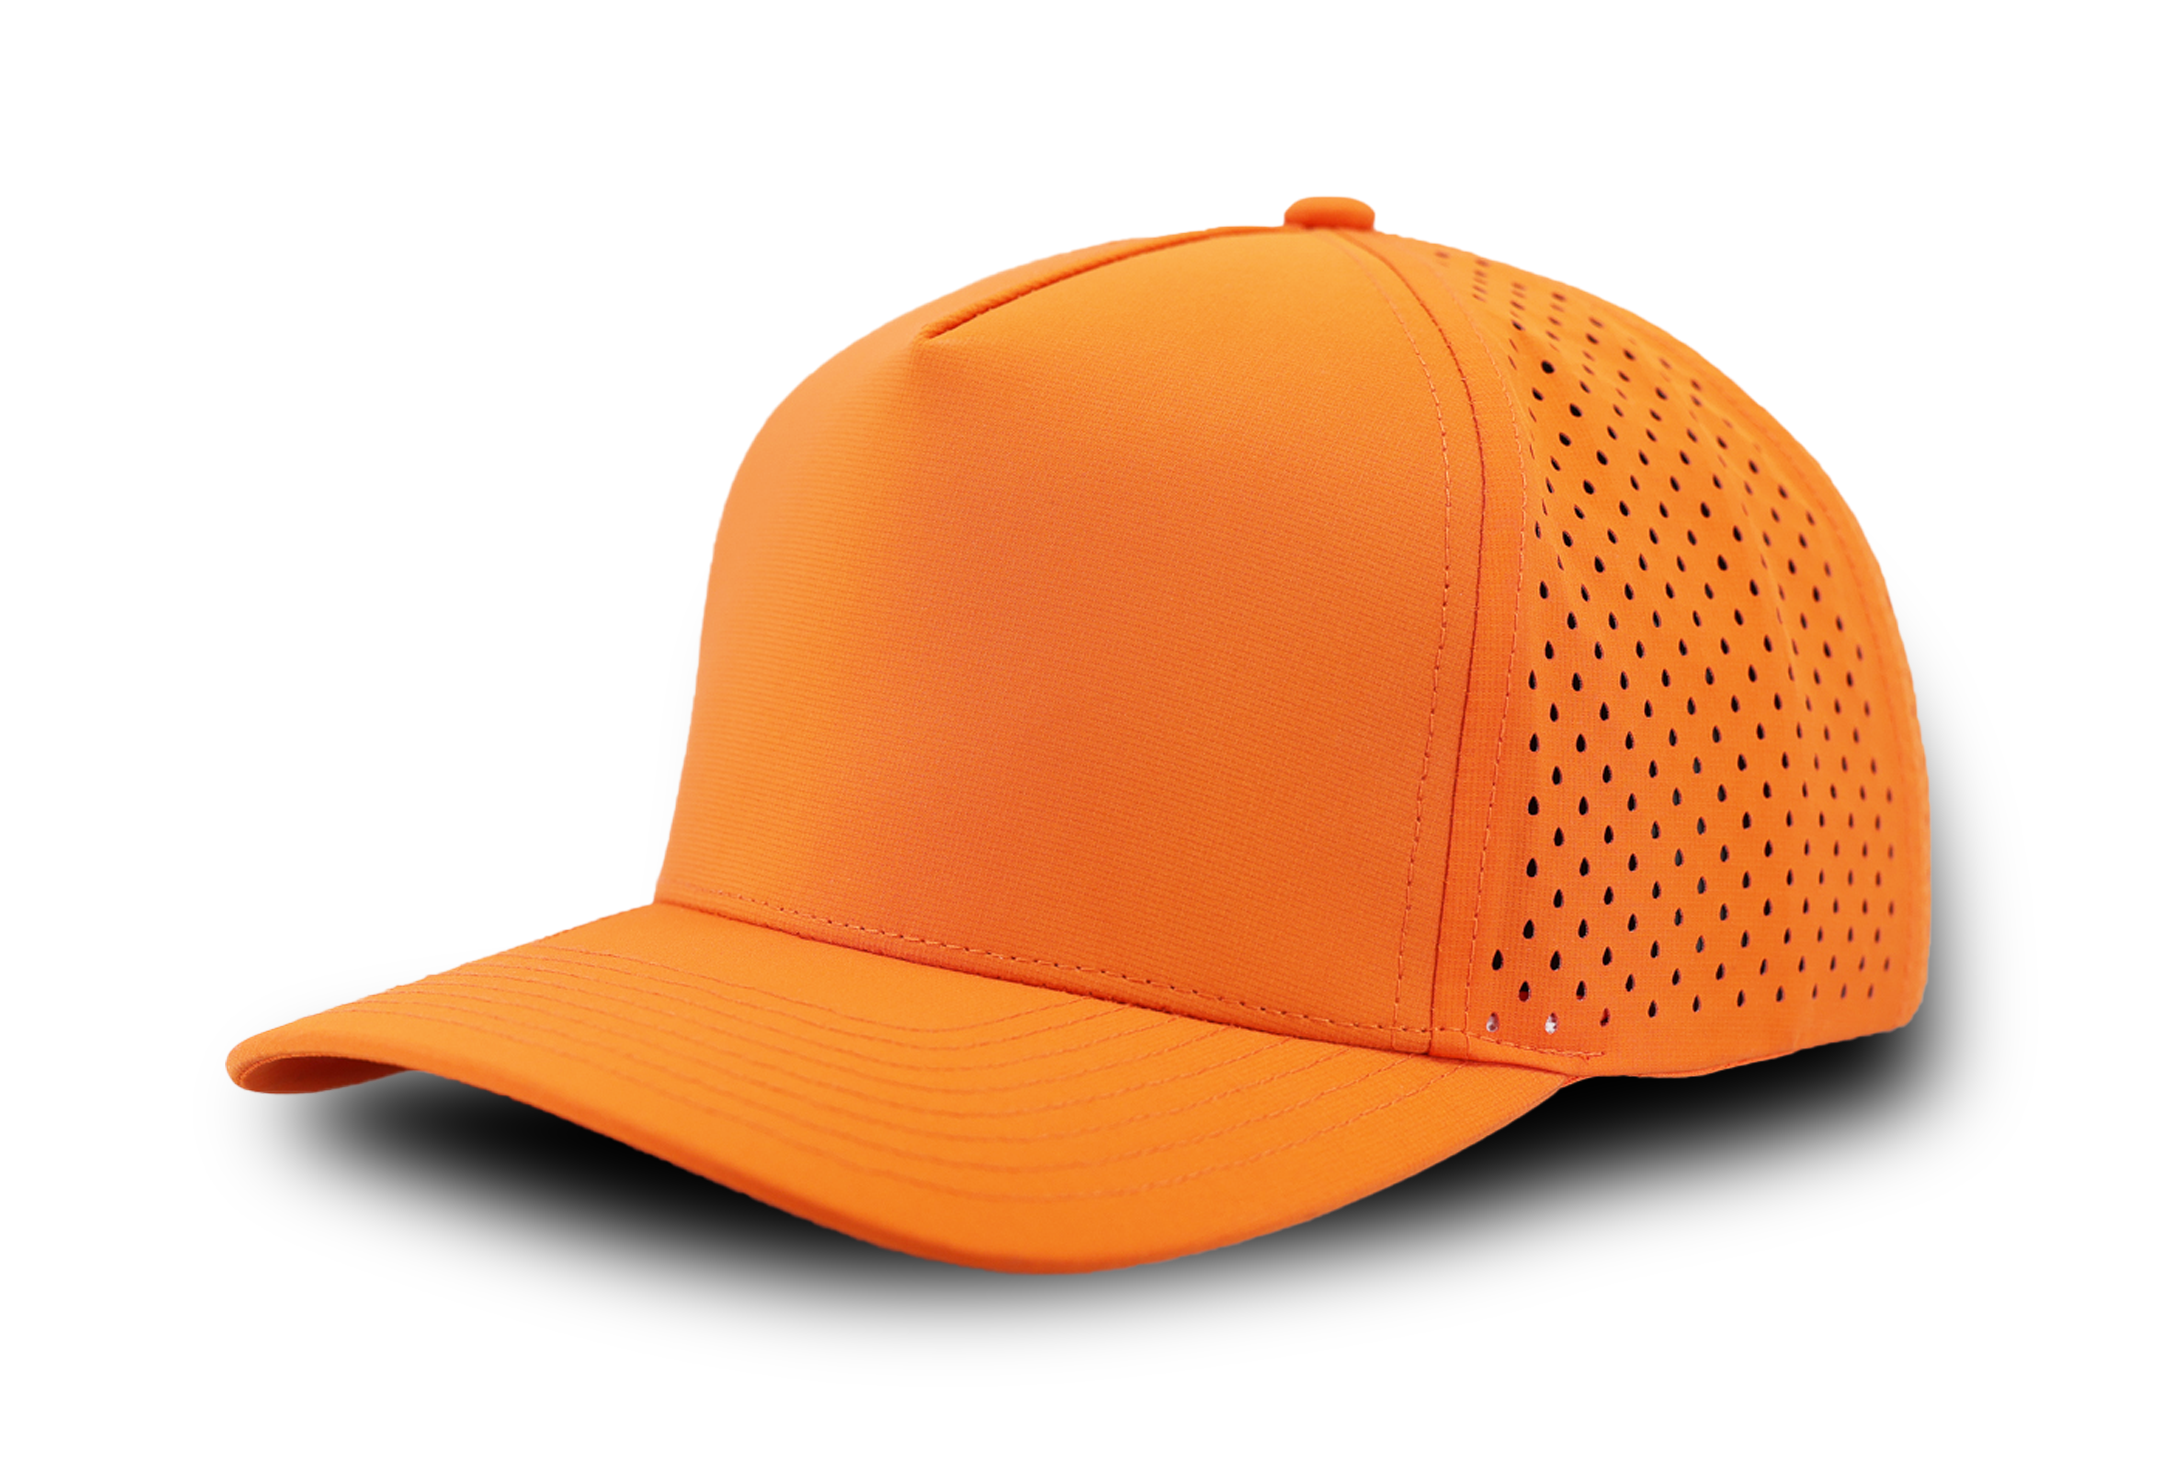 BLACKHAWK- Custom Hat Water Repellent hat-Zapped Headwear-Blaze Orange-Hunting hat- custom hat- snapback-Zapped Headwear